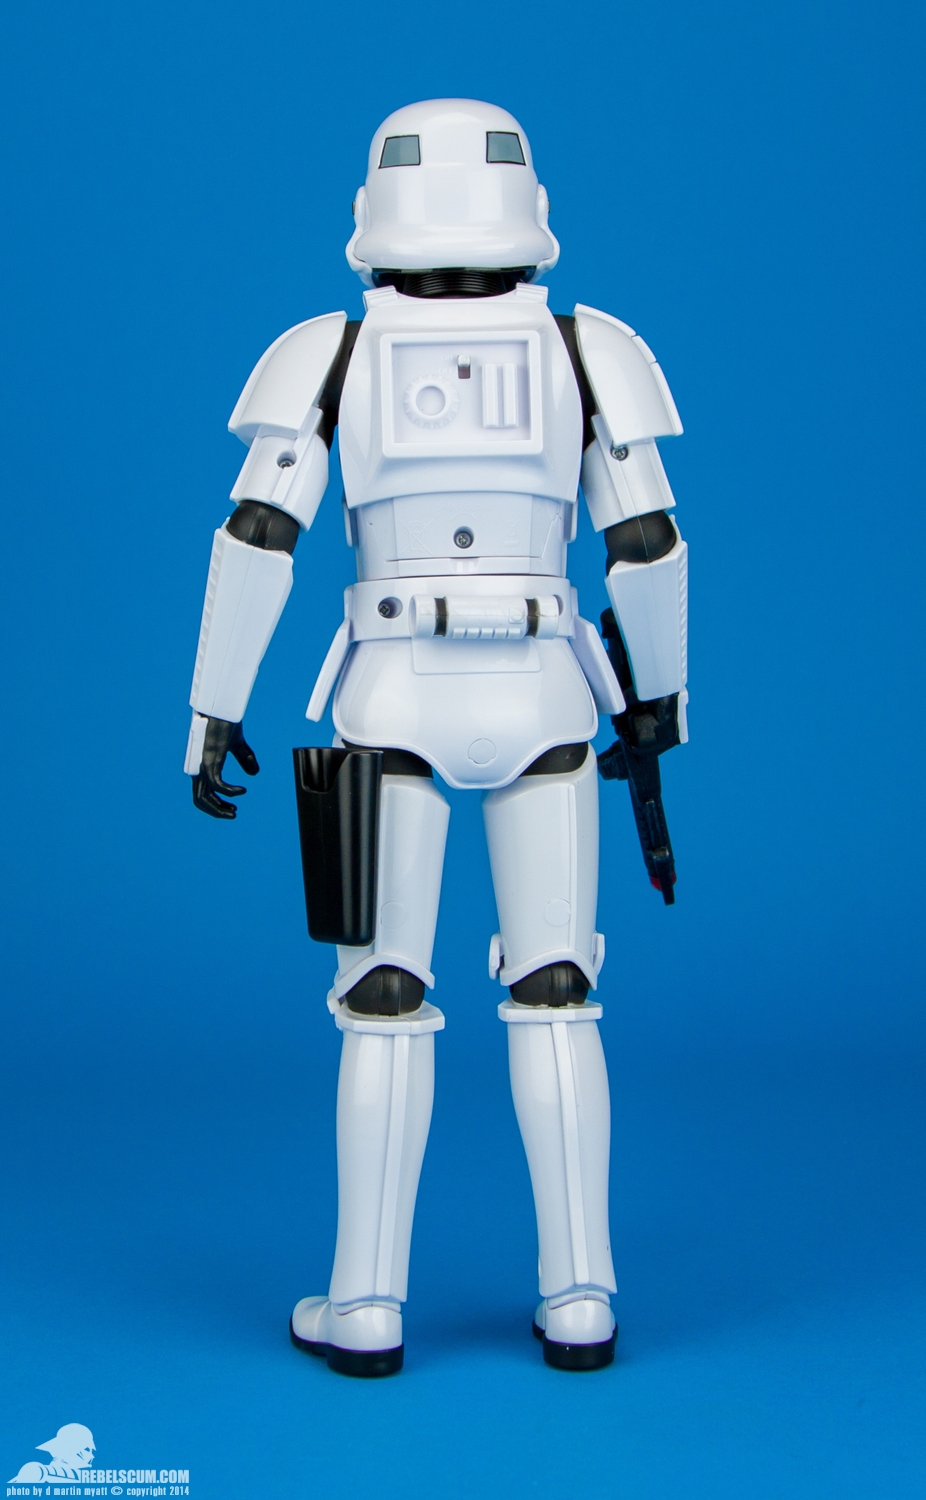 Disney-Store-Exclusive-Talking-Stormtrooper-004.jpg